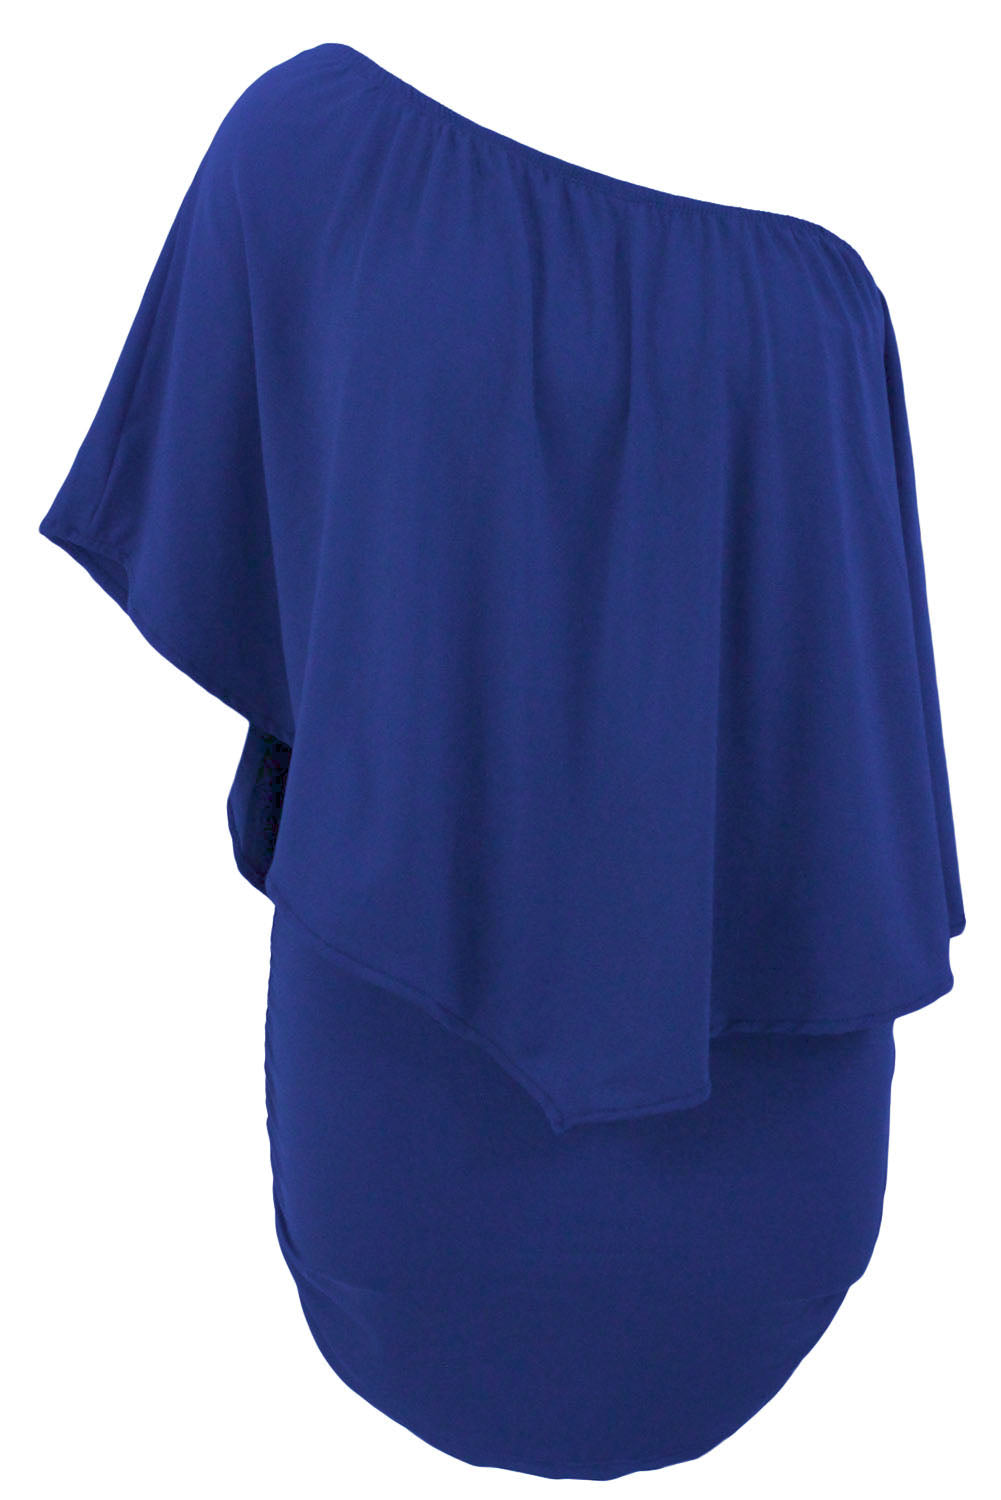 Slojevita plava mini pončo haljina s višestrukim odijevanjem